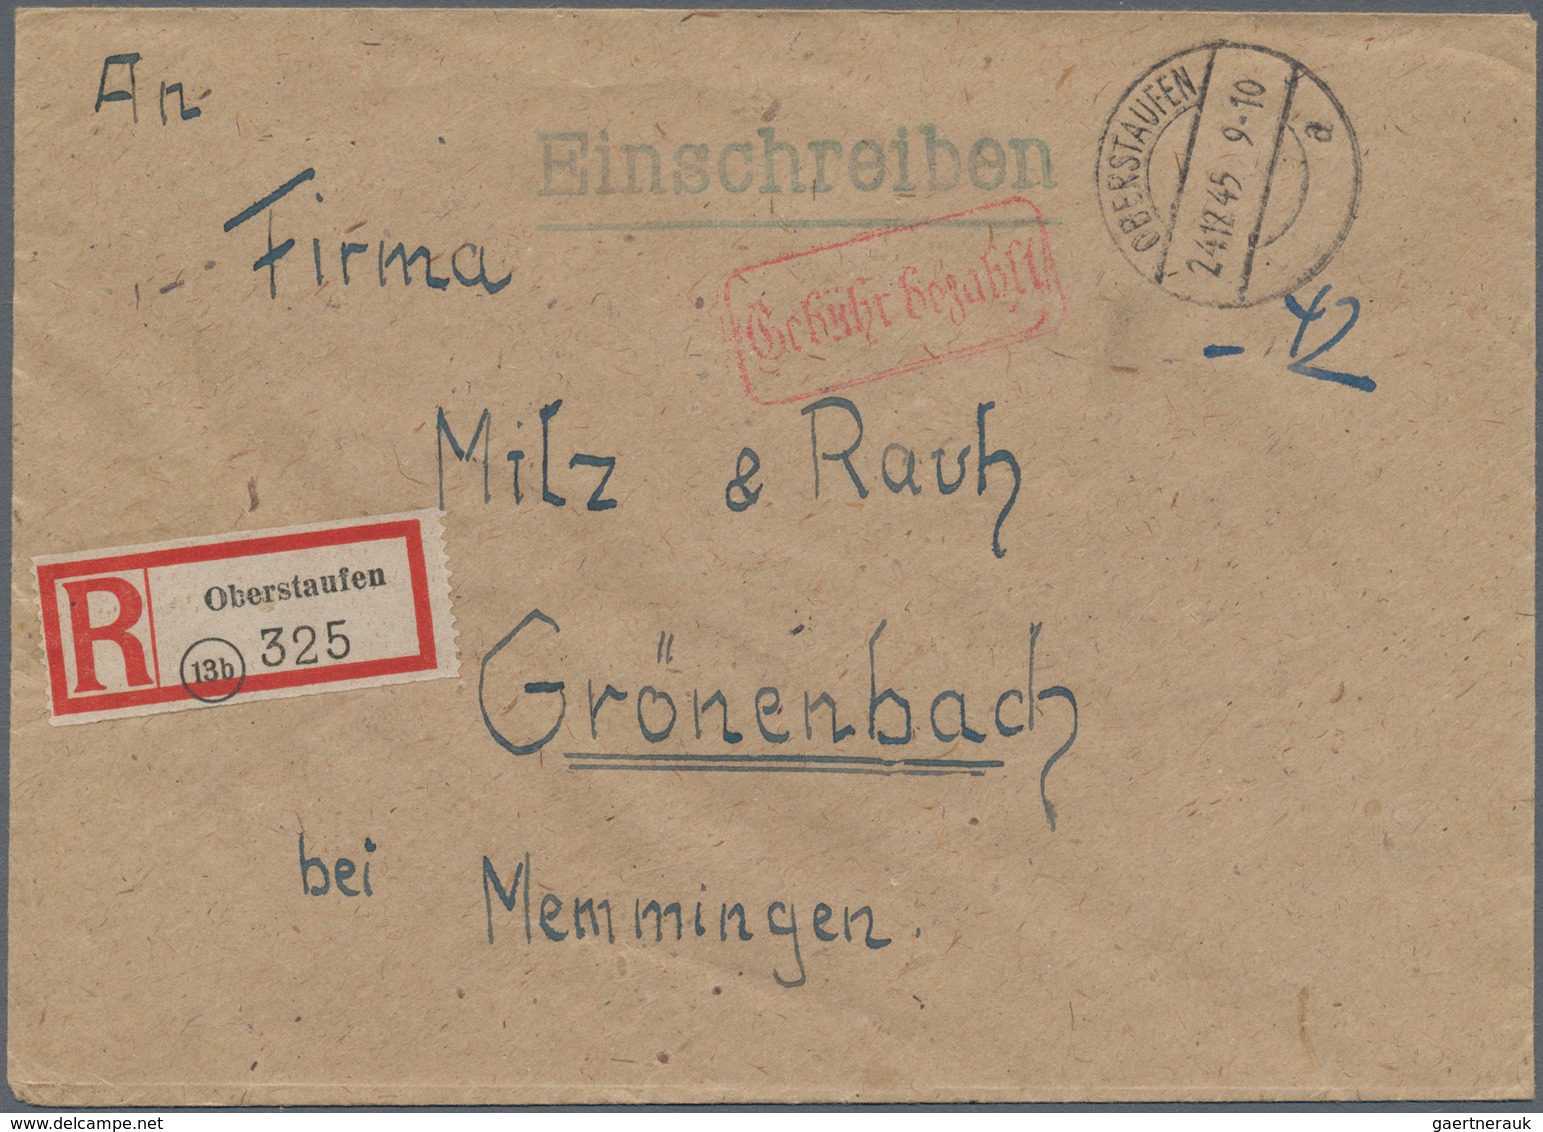 Alliierte Besetzung - Gebühr Bezahlt: 1945/1946, Bayern/Schwaben Plz 13b, saubere Partie von ca. 135